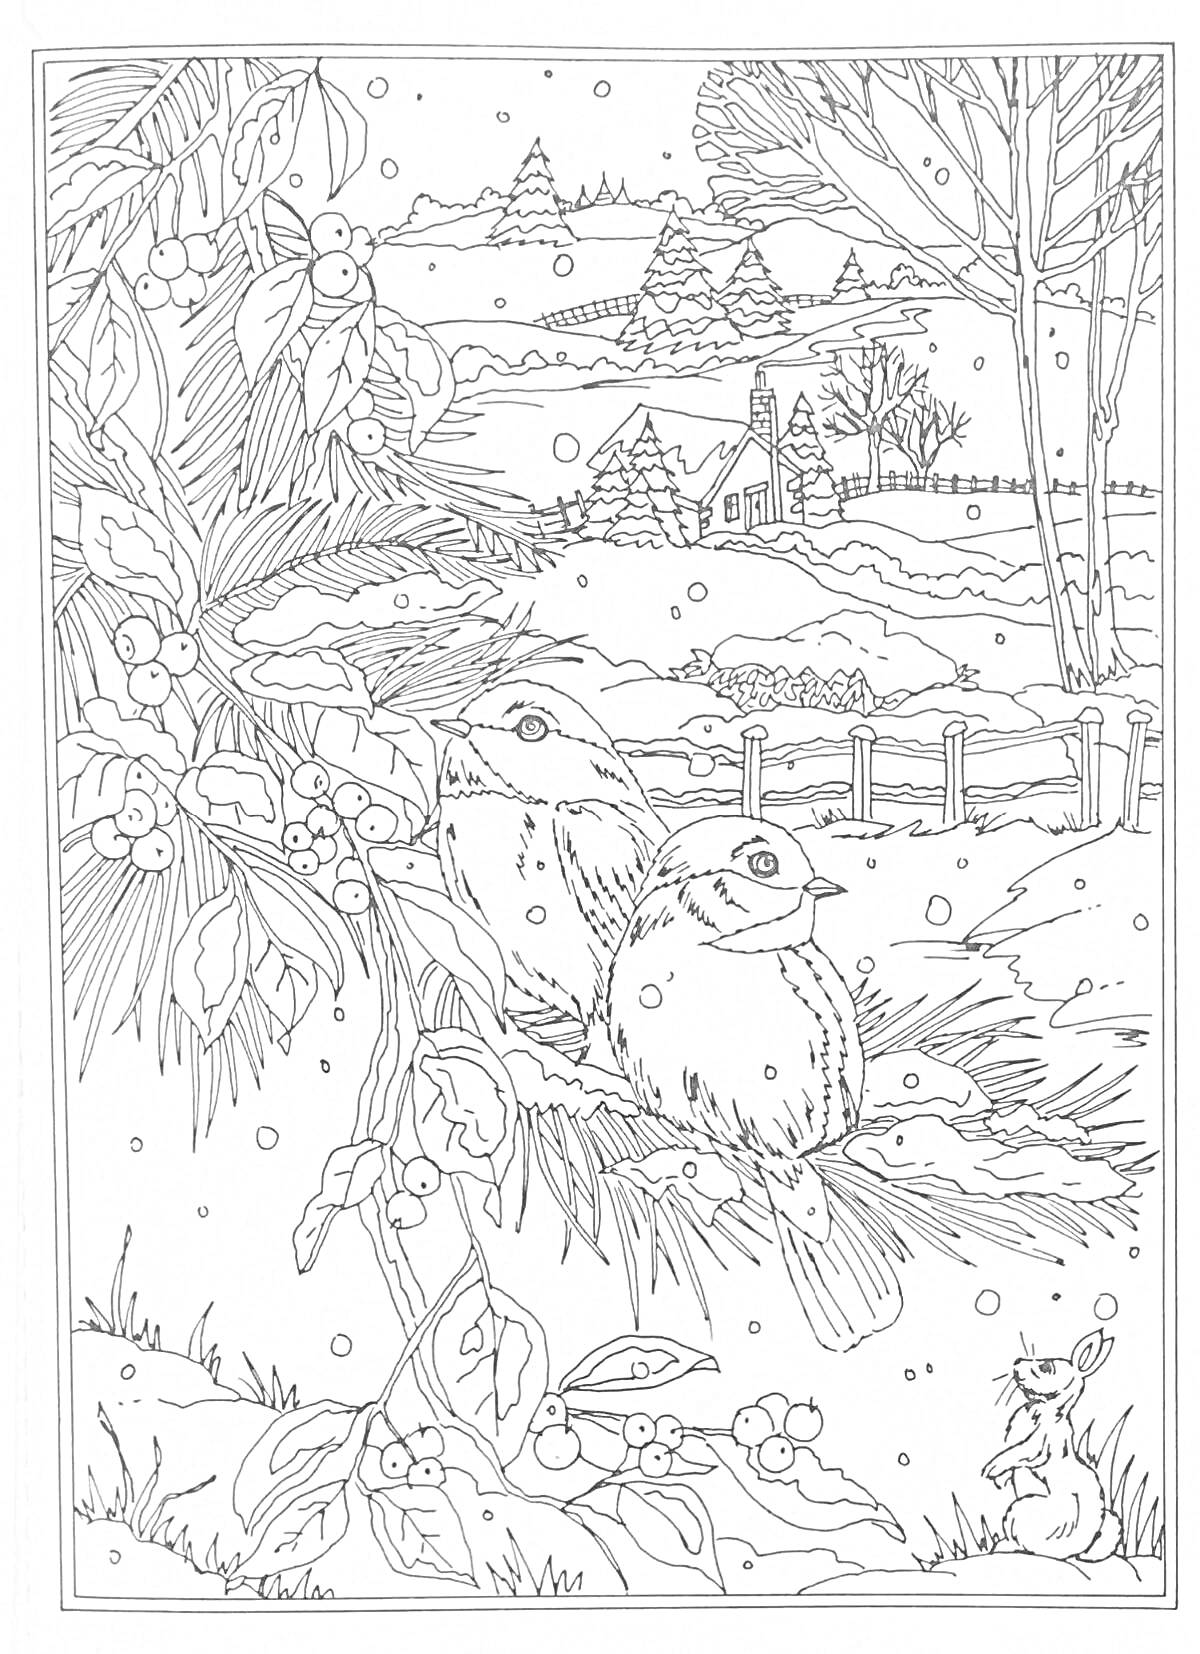 Раскраска зимний пейзаж с птицами, ягодами, домами и кроликом на снегу